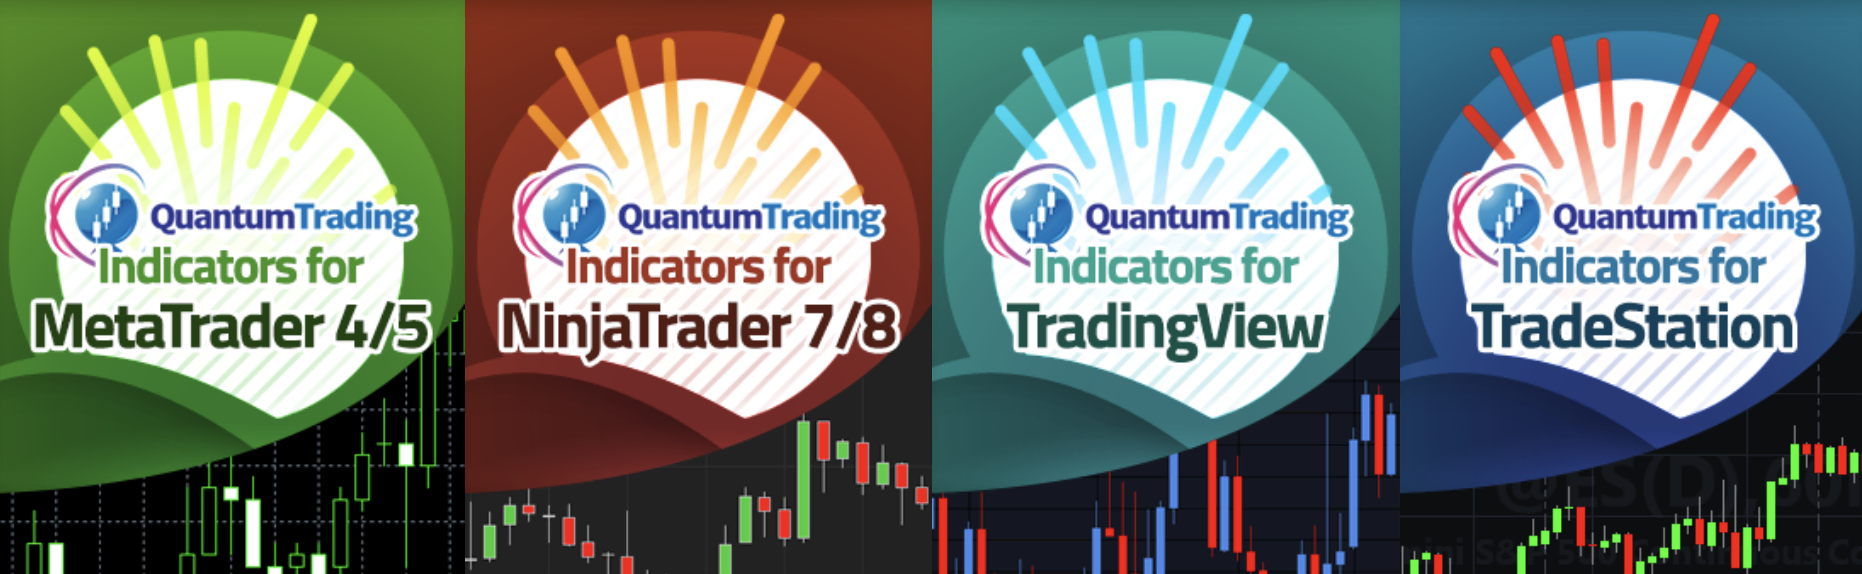 Indicadores disponibles en Quantum Trading